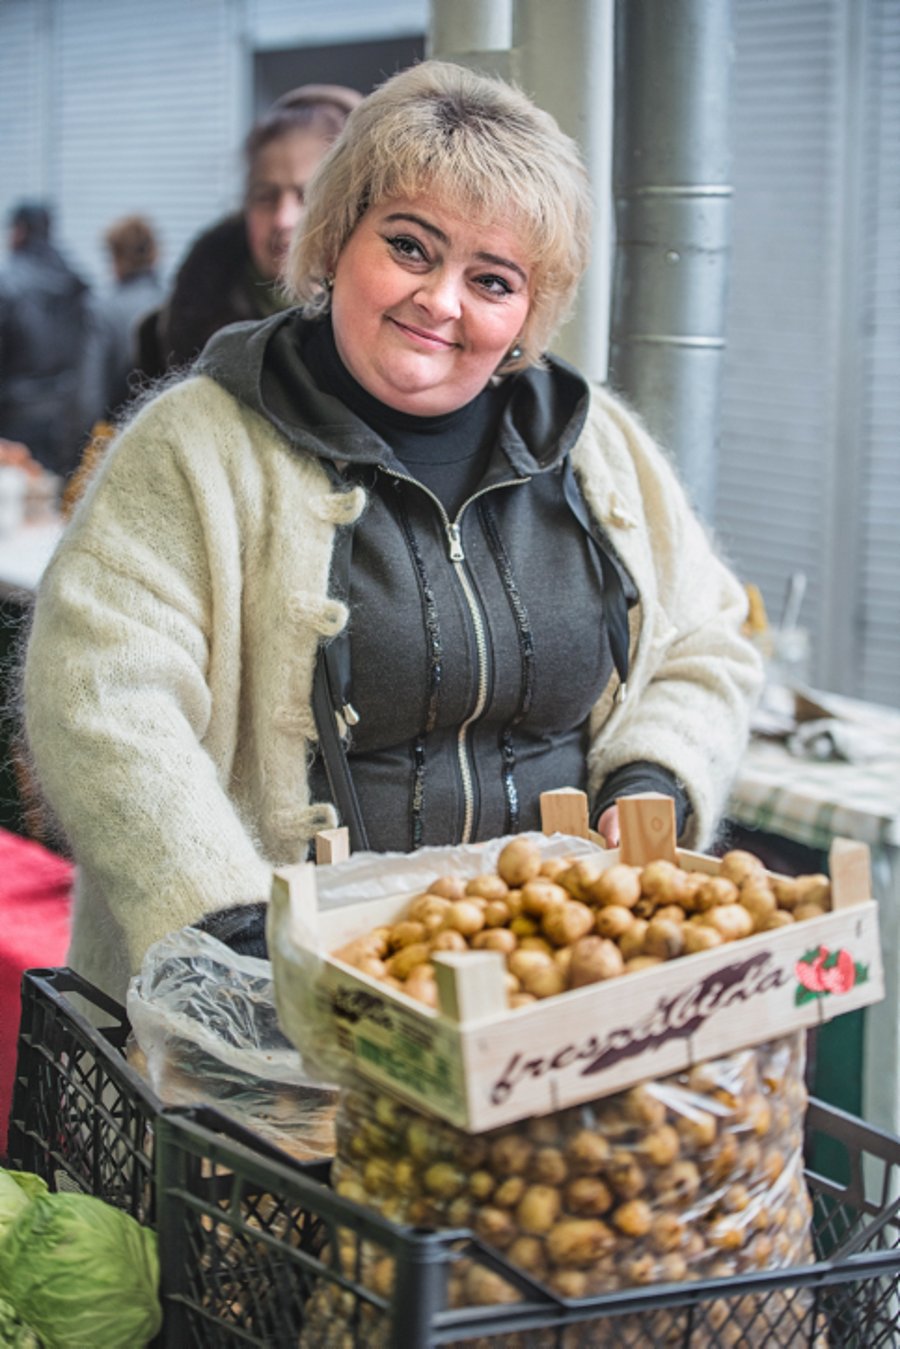 שוק קרקיבסקי - השוק של לבוב דרך מצלמה